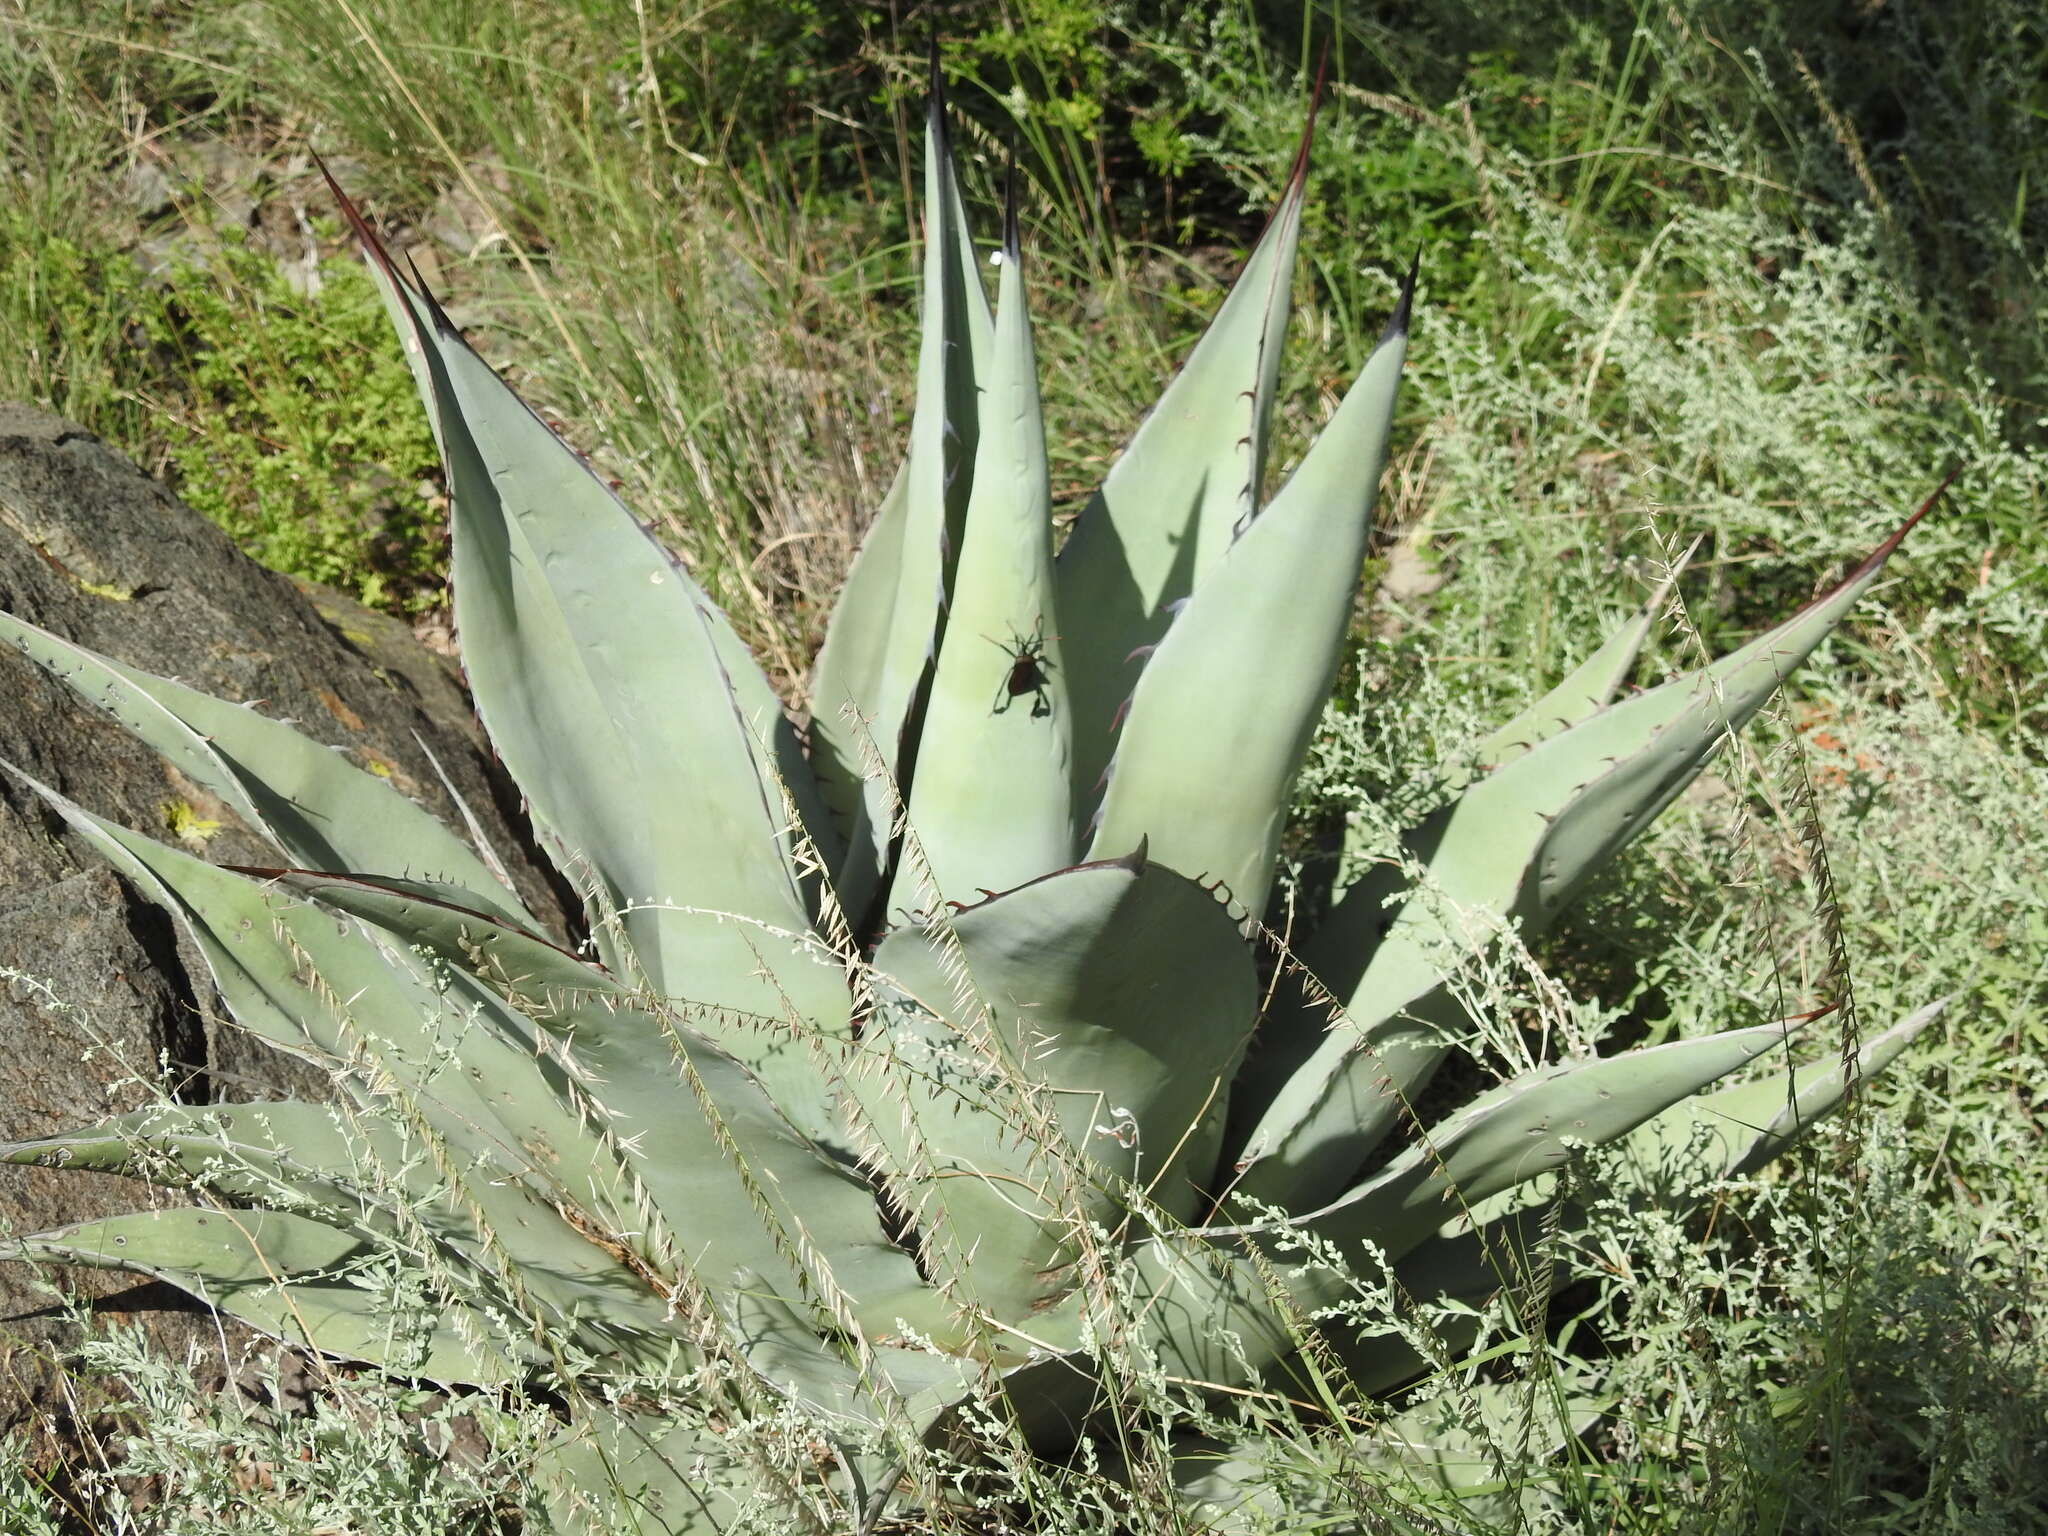 Image of Havard's century plant